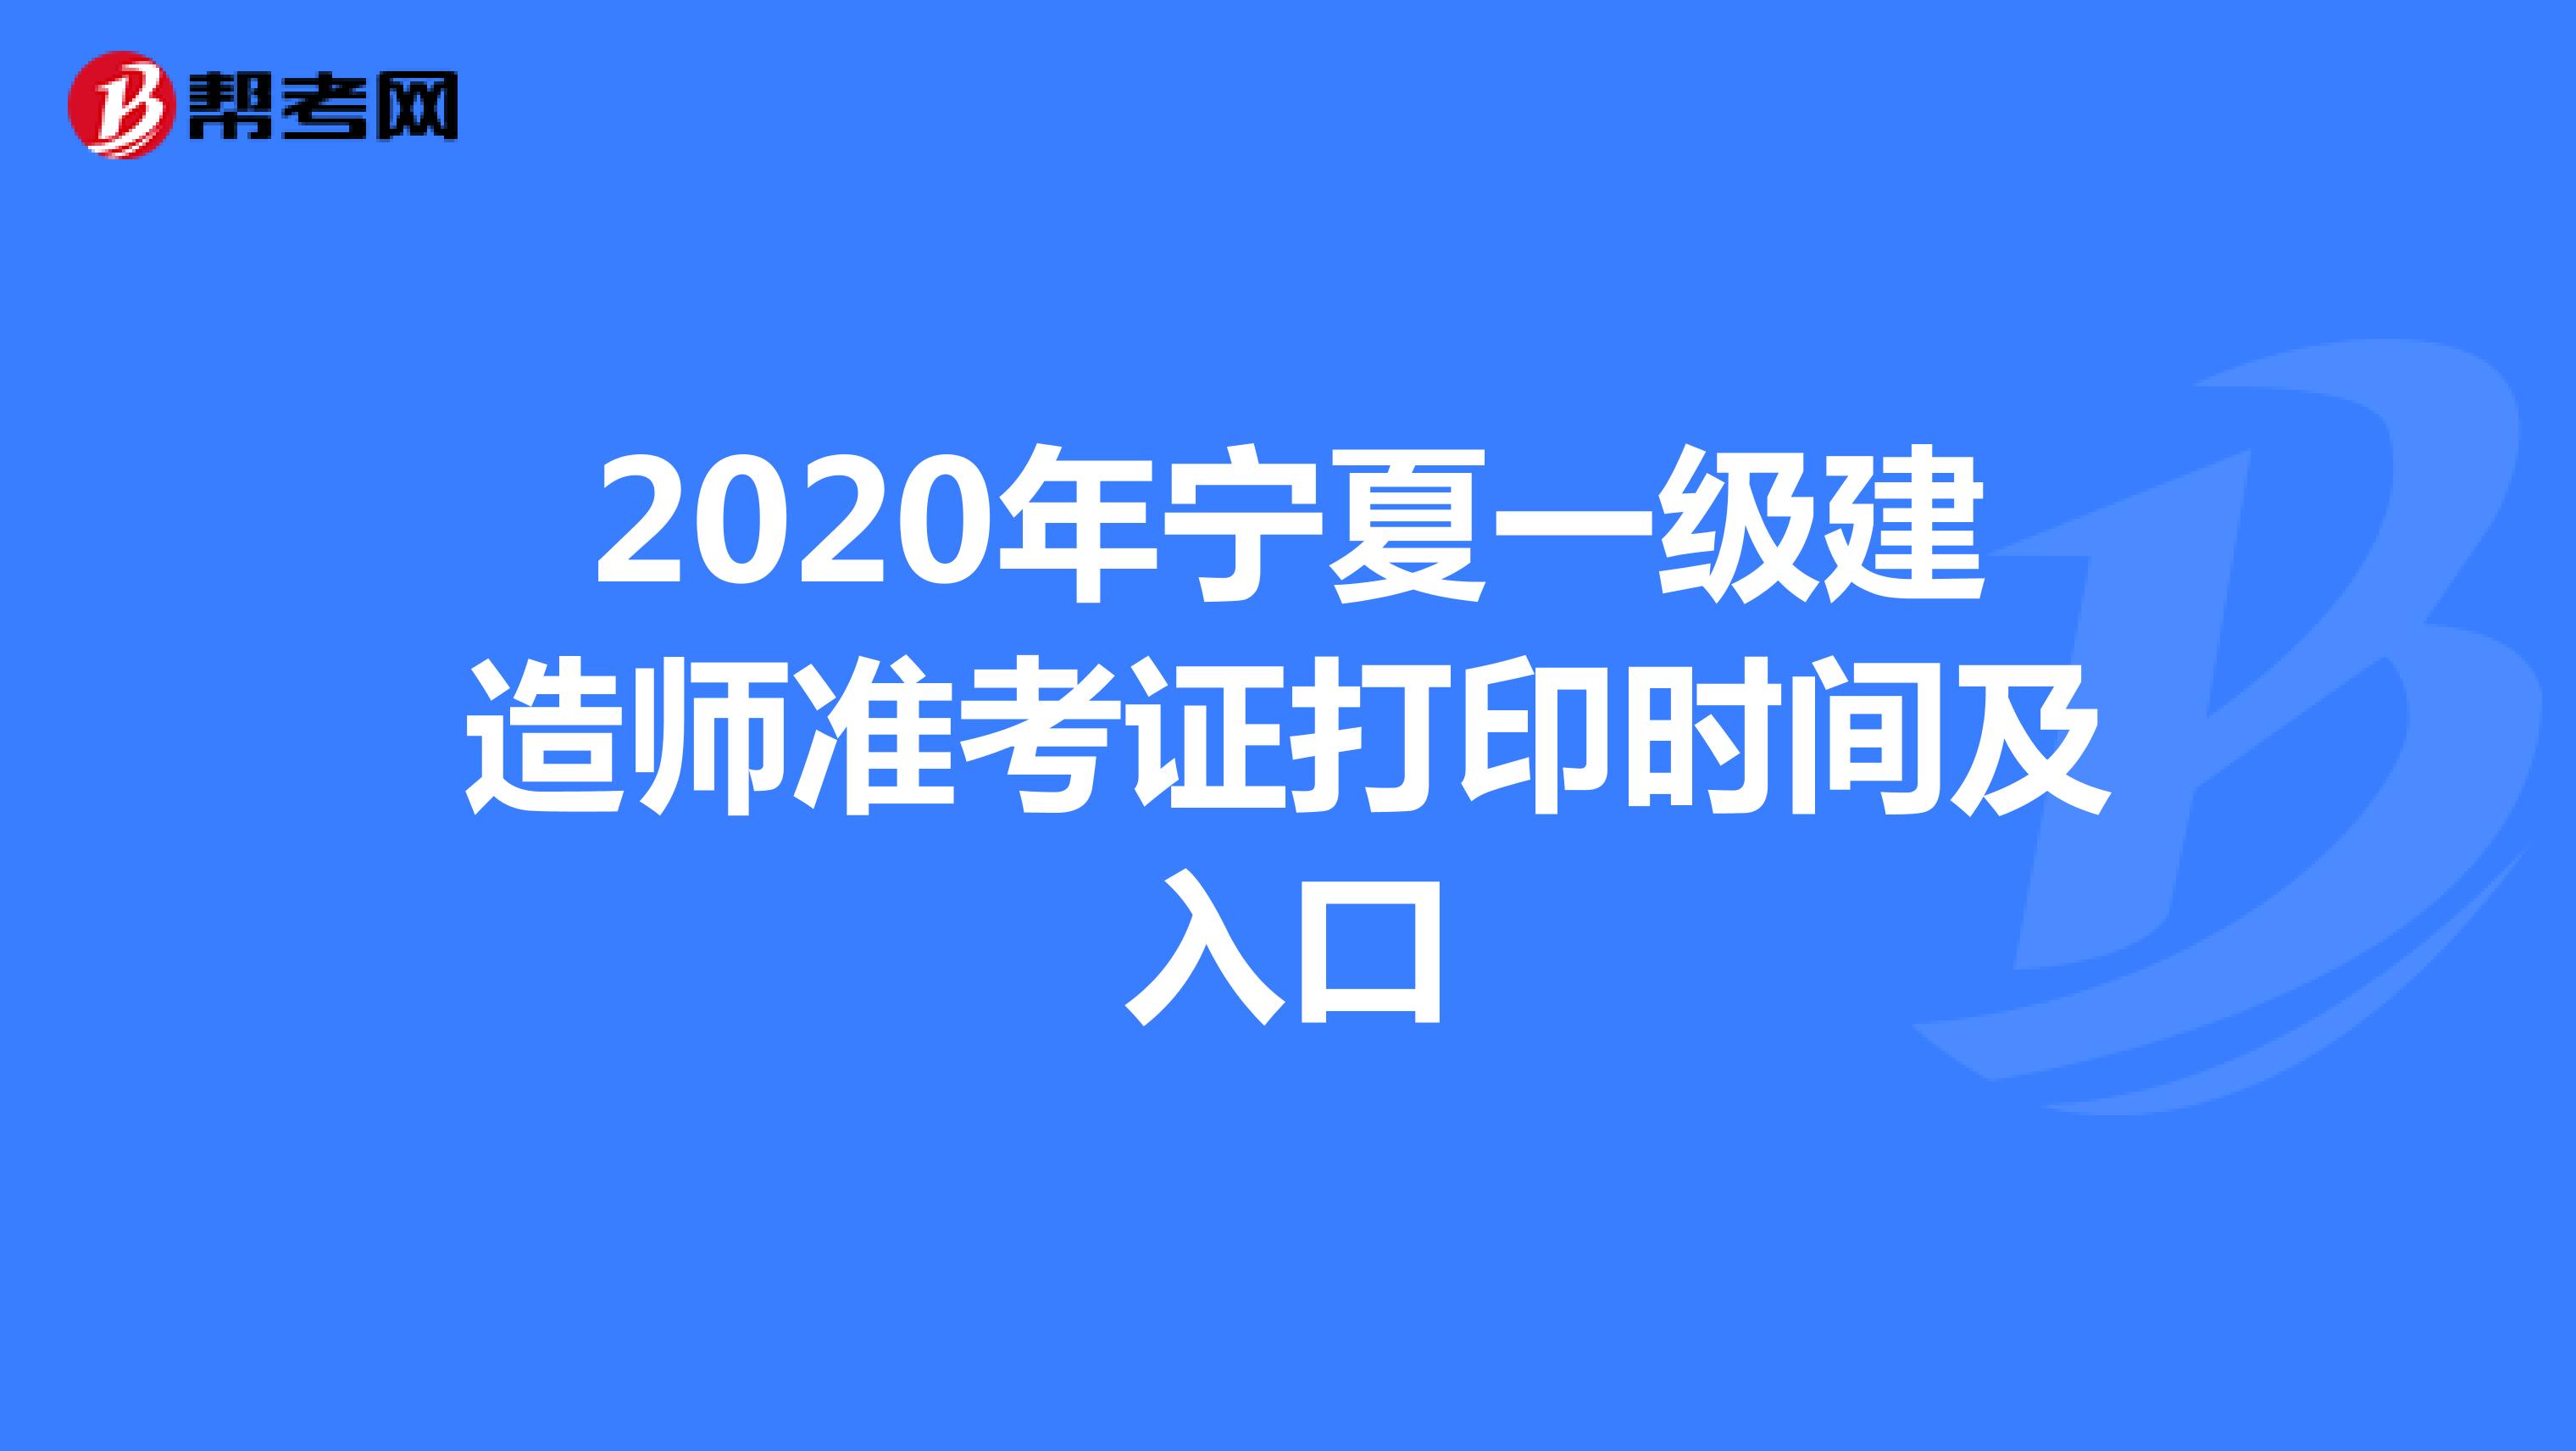 2020年宁夏一级建造师准考证打印截止时间：9月18日